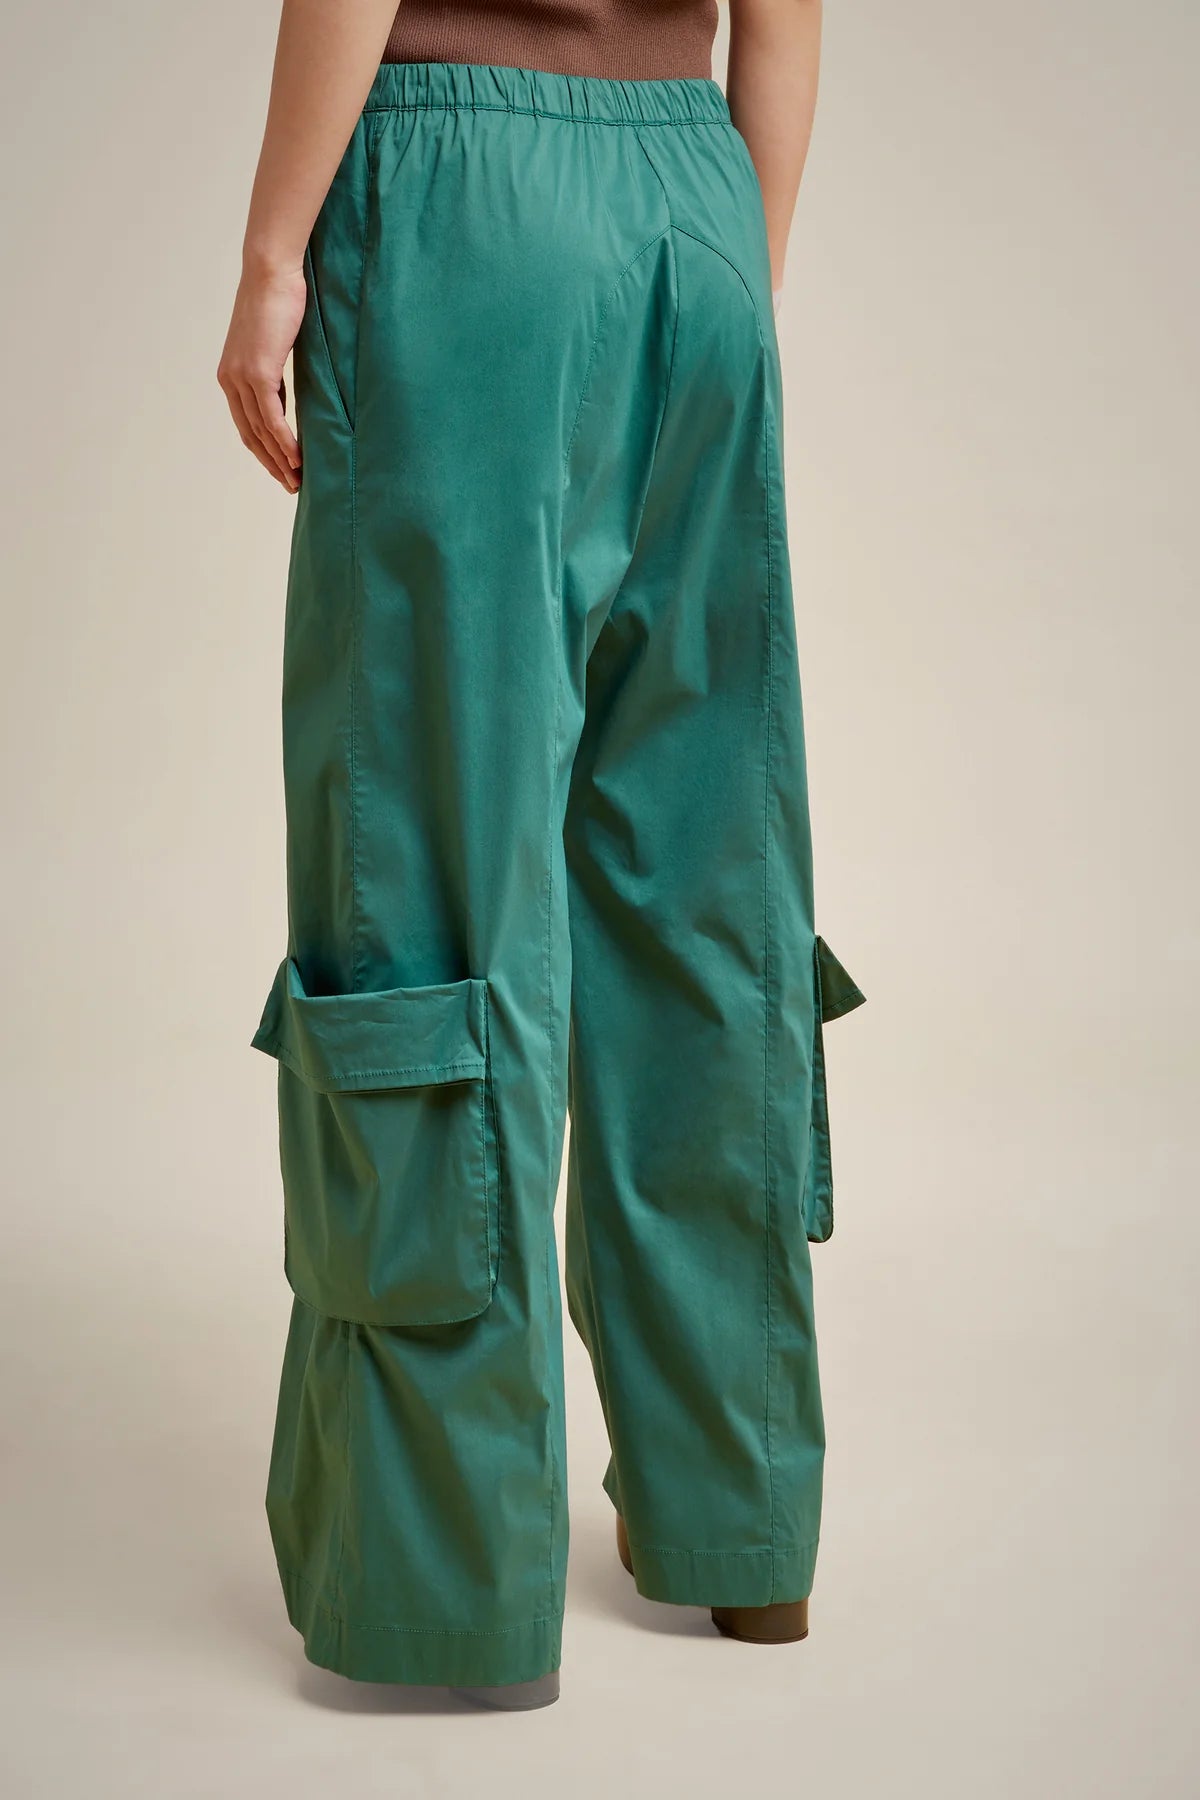 Pantalón popelín cargo verde esmeralda